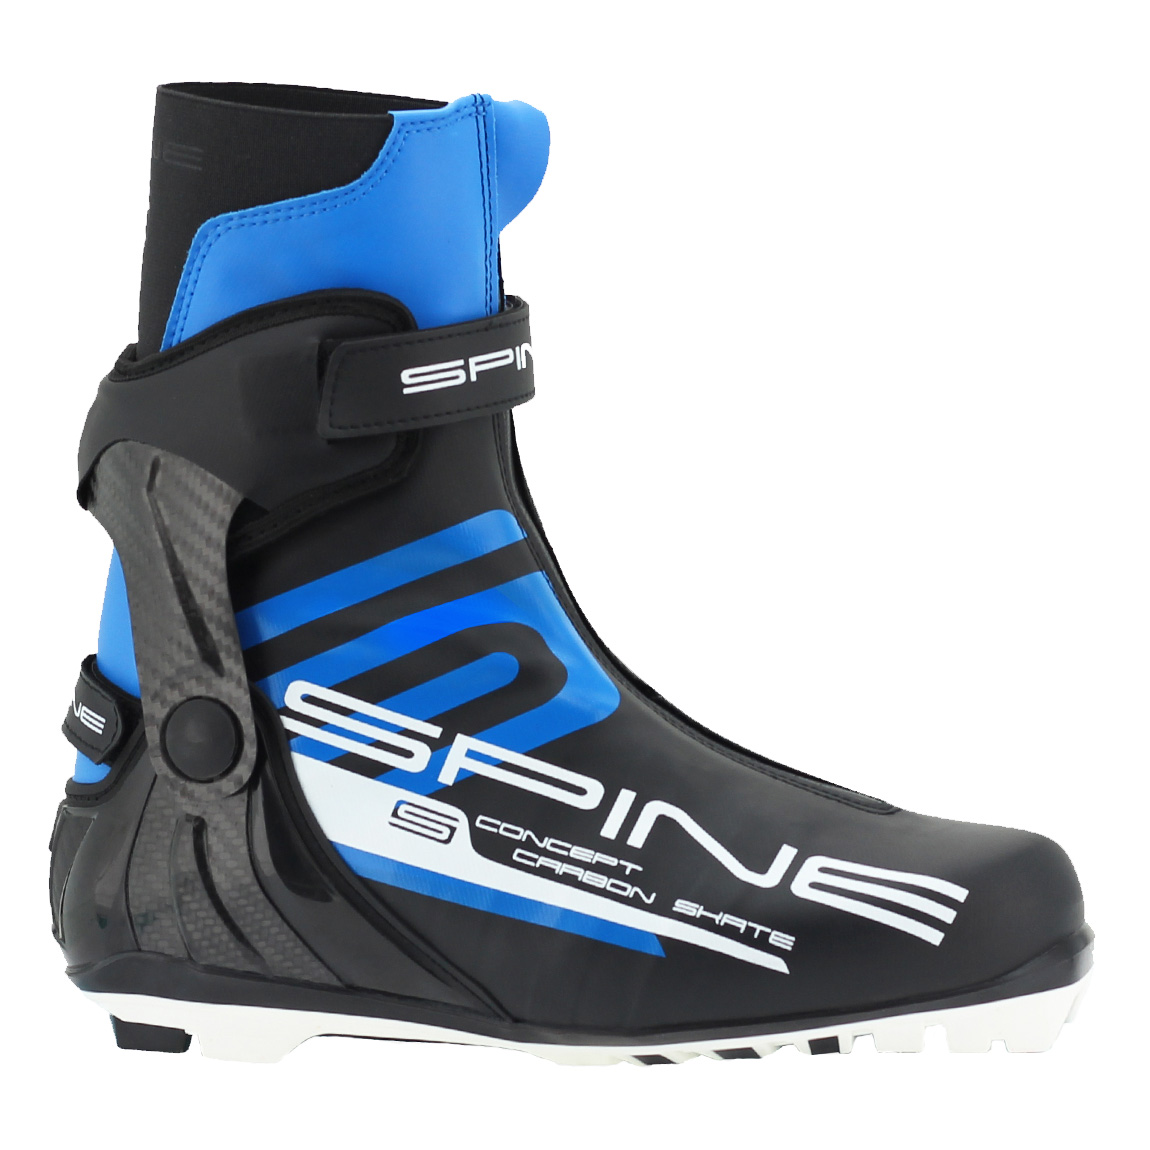 Ботинки спайн купить. Ботинки Spine NNN. Ботинки Spine Concept Carbon Skate 298. Лыжные ботинки Spine NNN Concept Skate. Лыжные ботинки NNN Spine Concept Combi 268.